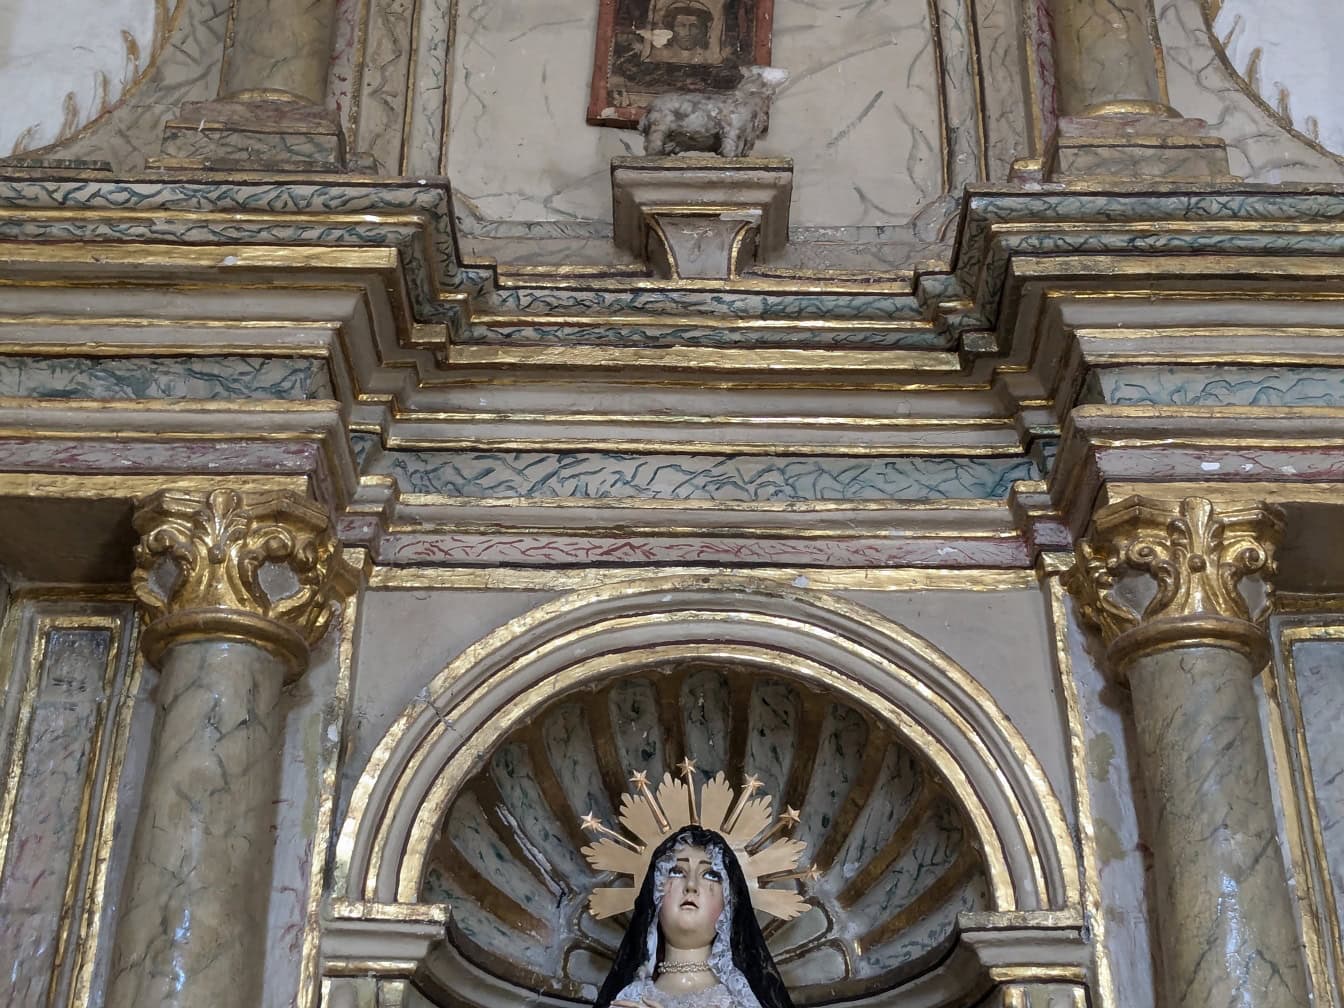 Szent Mária, Jézus Krisztus anyja szobra a katolikus templom oltárfülkéjében